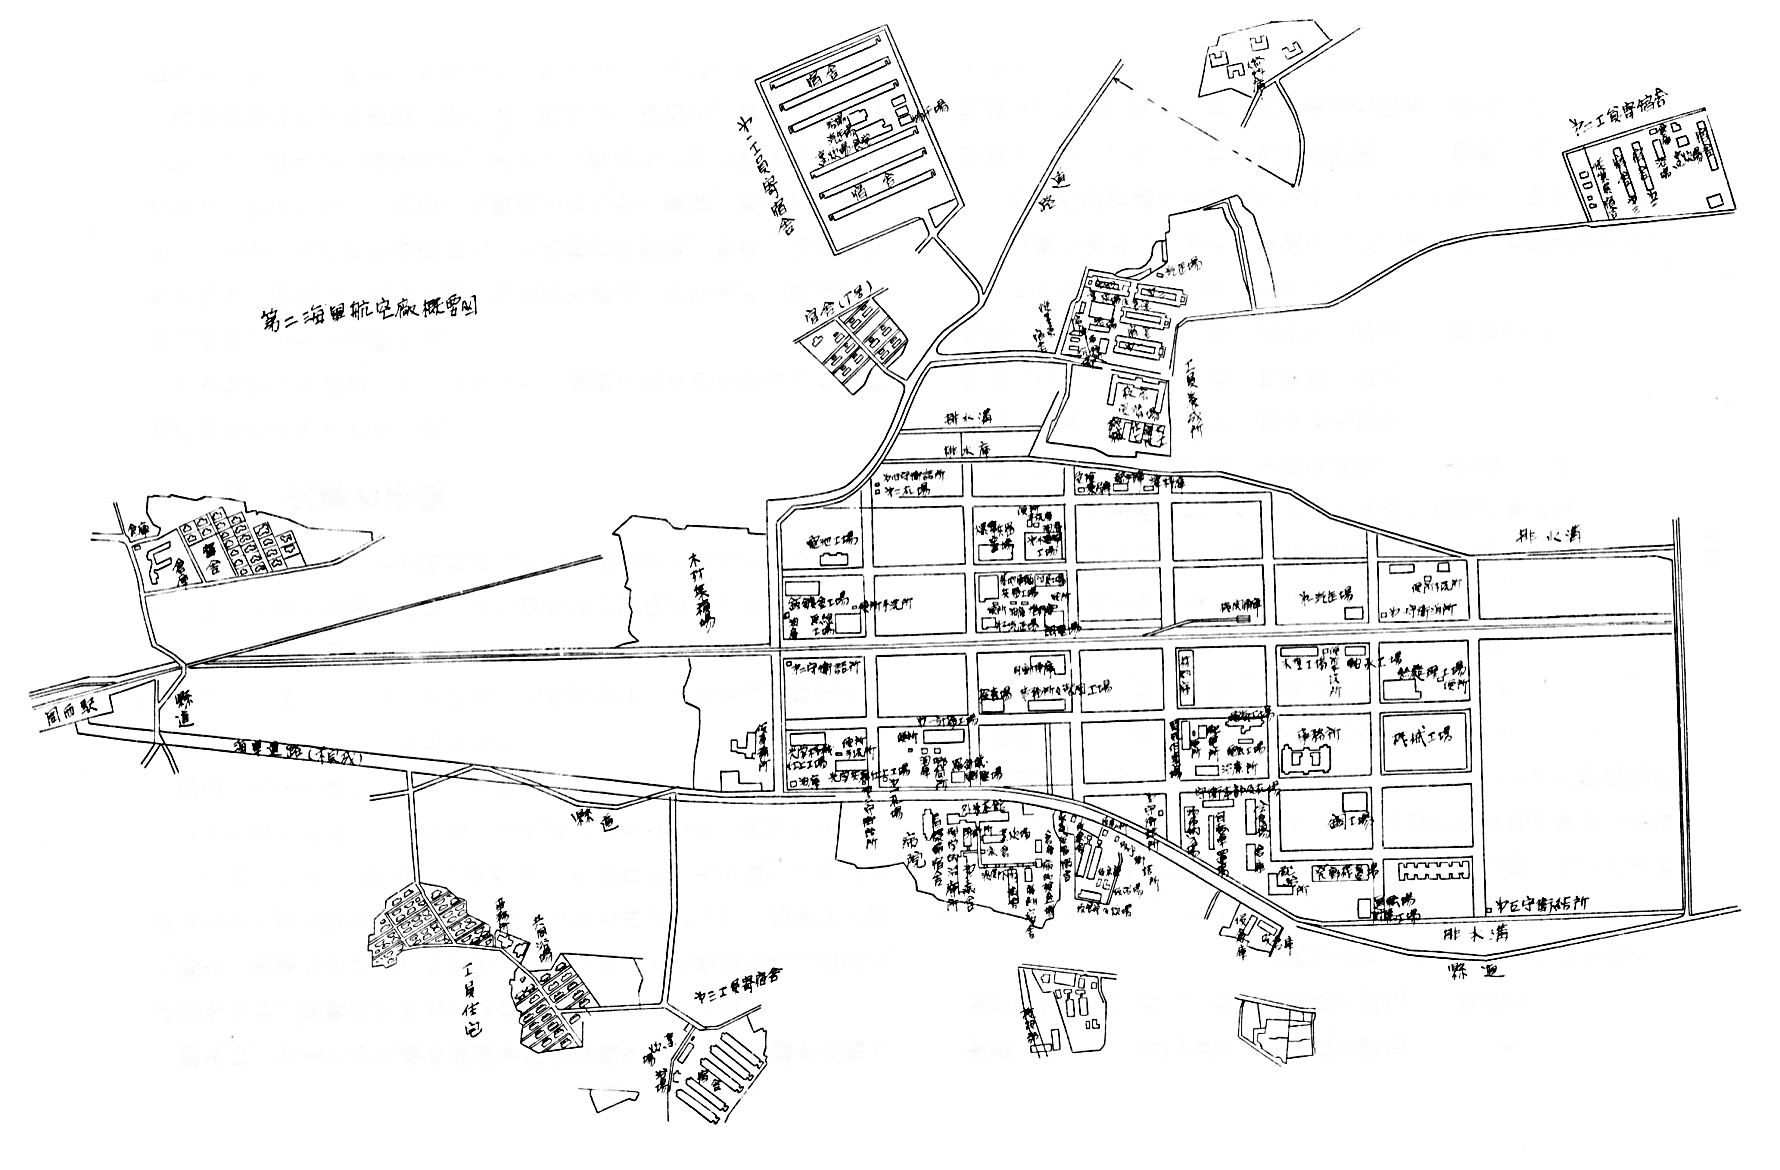 第二海軍航空廠　八重原分工場の概要図